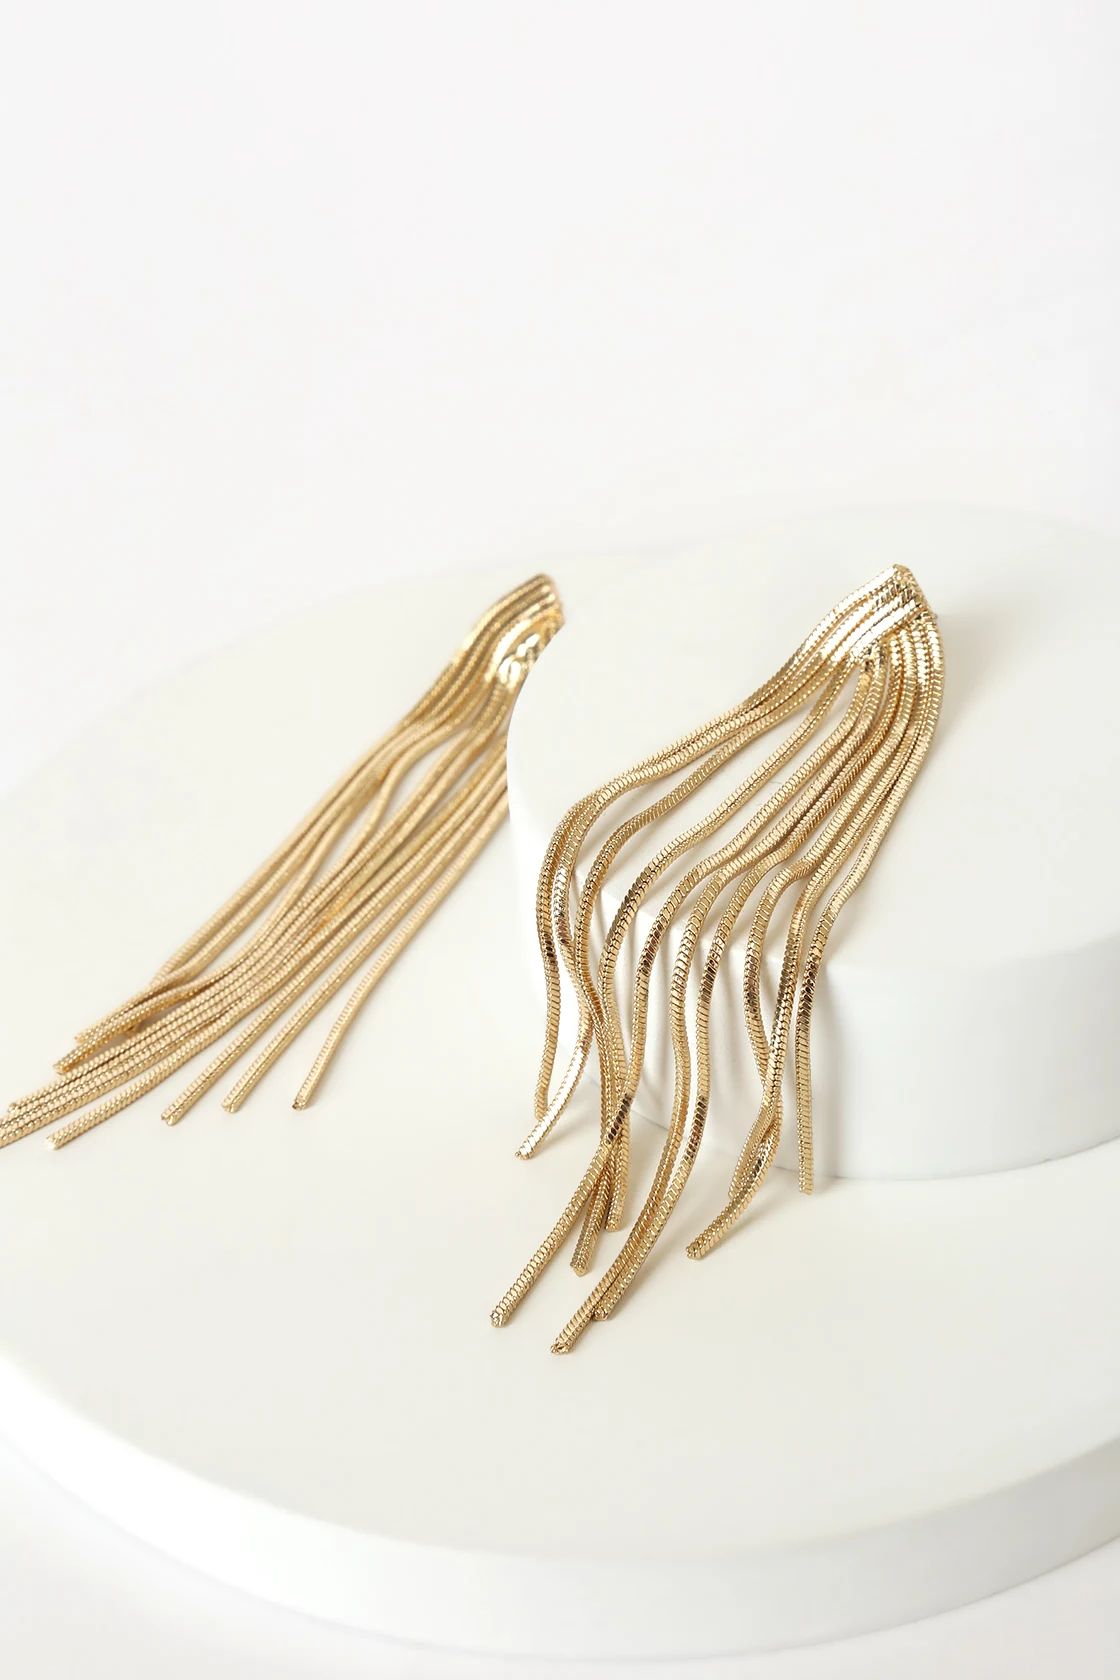 See Me Glowing Gold Fringe Drop Earrings | Lulus